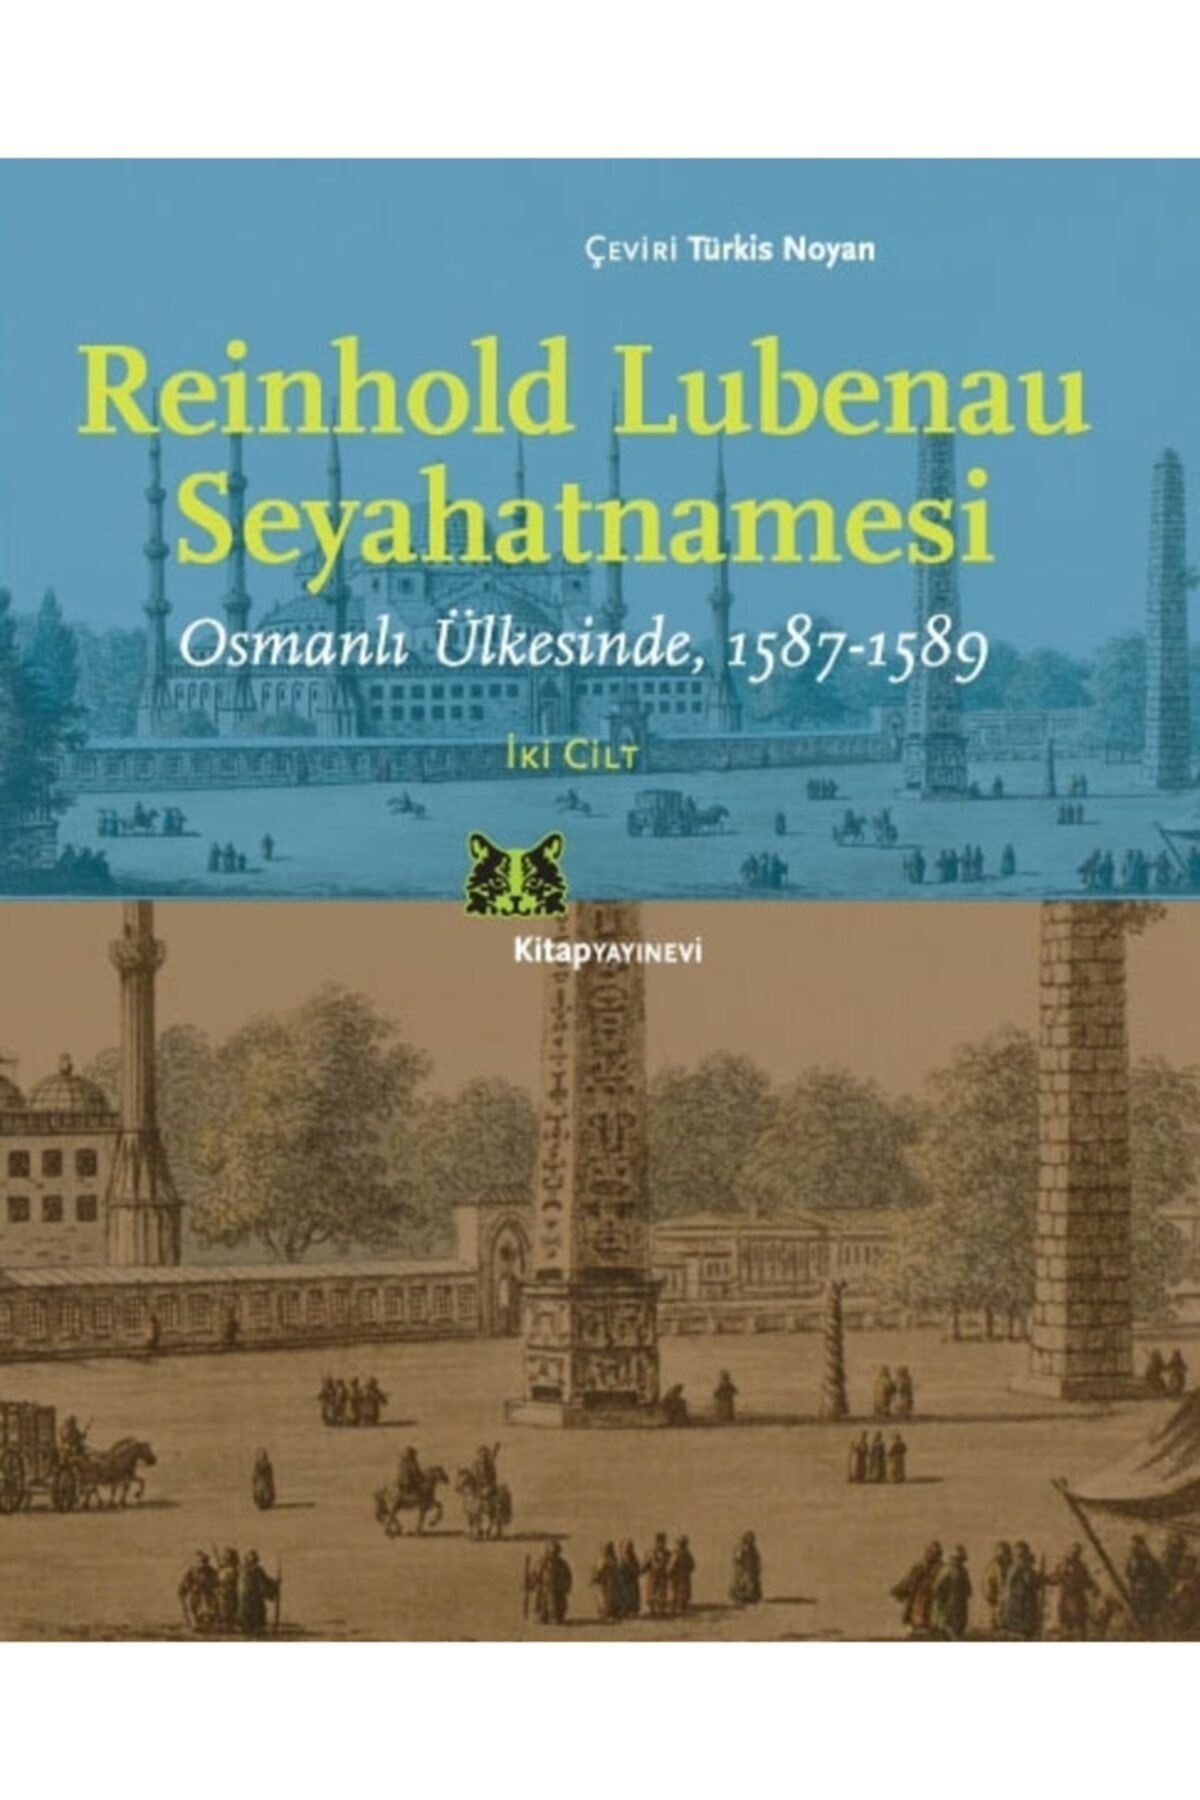 Kitap Yayınevi Reinhold Lubenau Seyehatnamesi & Osmanlı Ülkesinde 1587-1589 (2 Cilt Kutulu)